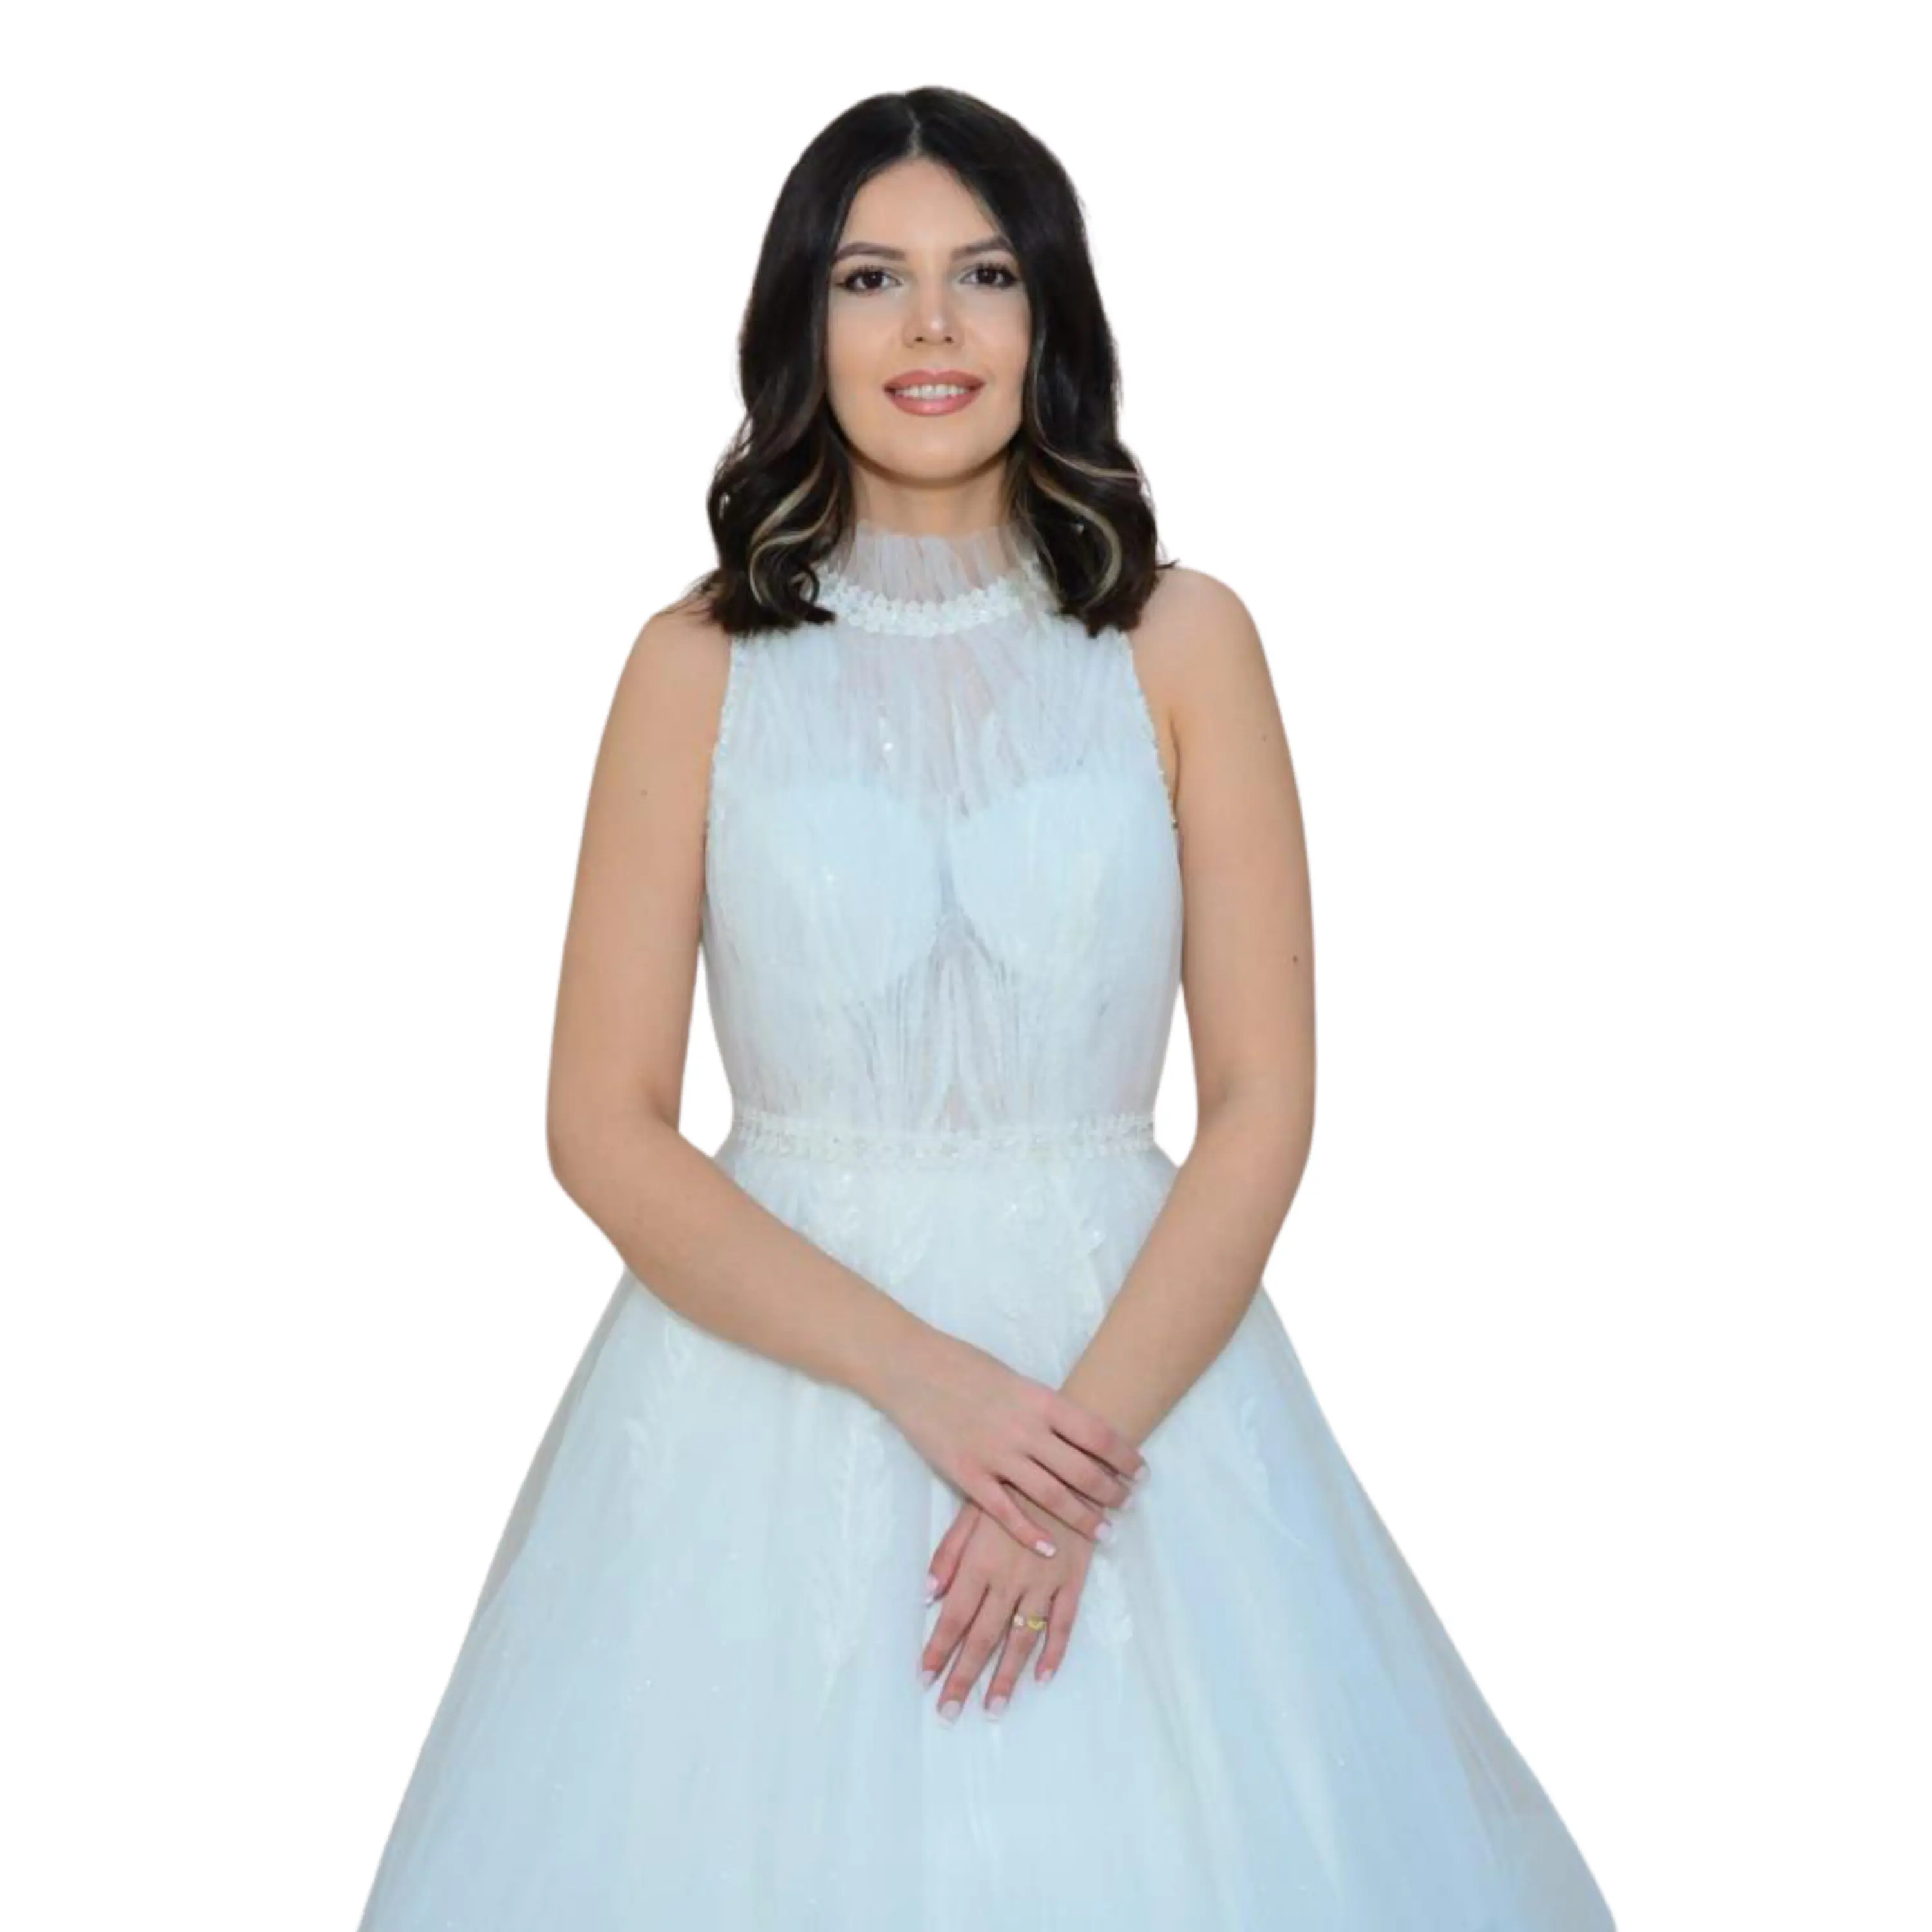 Nalans Long Lace Wedding Dress Plus Size Wedding Gown Vintage Bridal Women Fashion Casual Bride Floral Beach OEM Train pas07